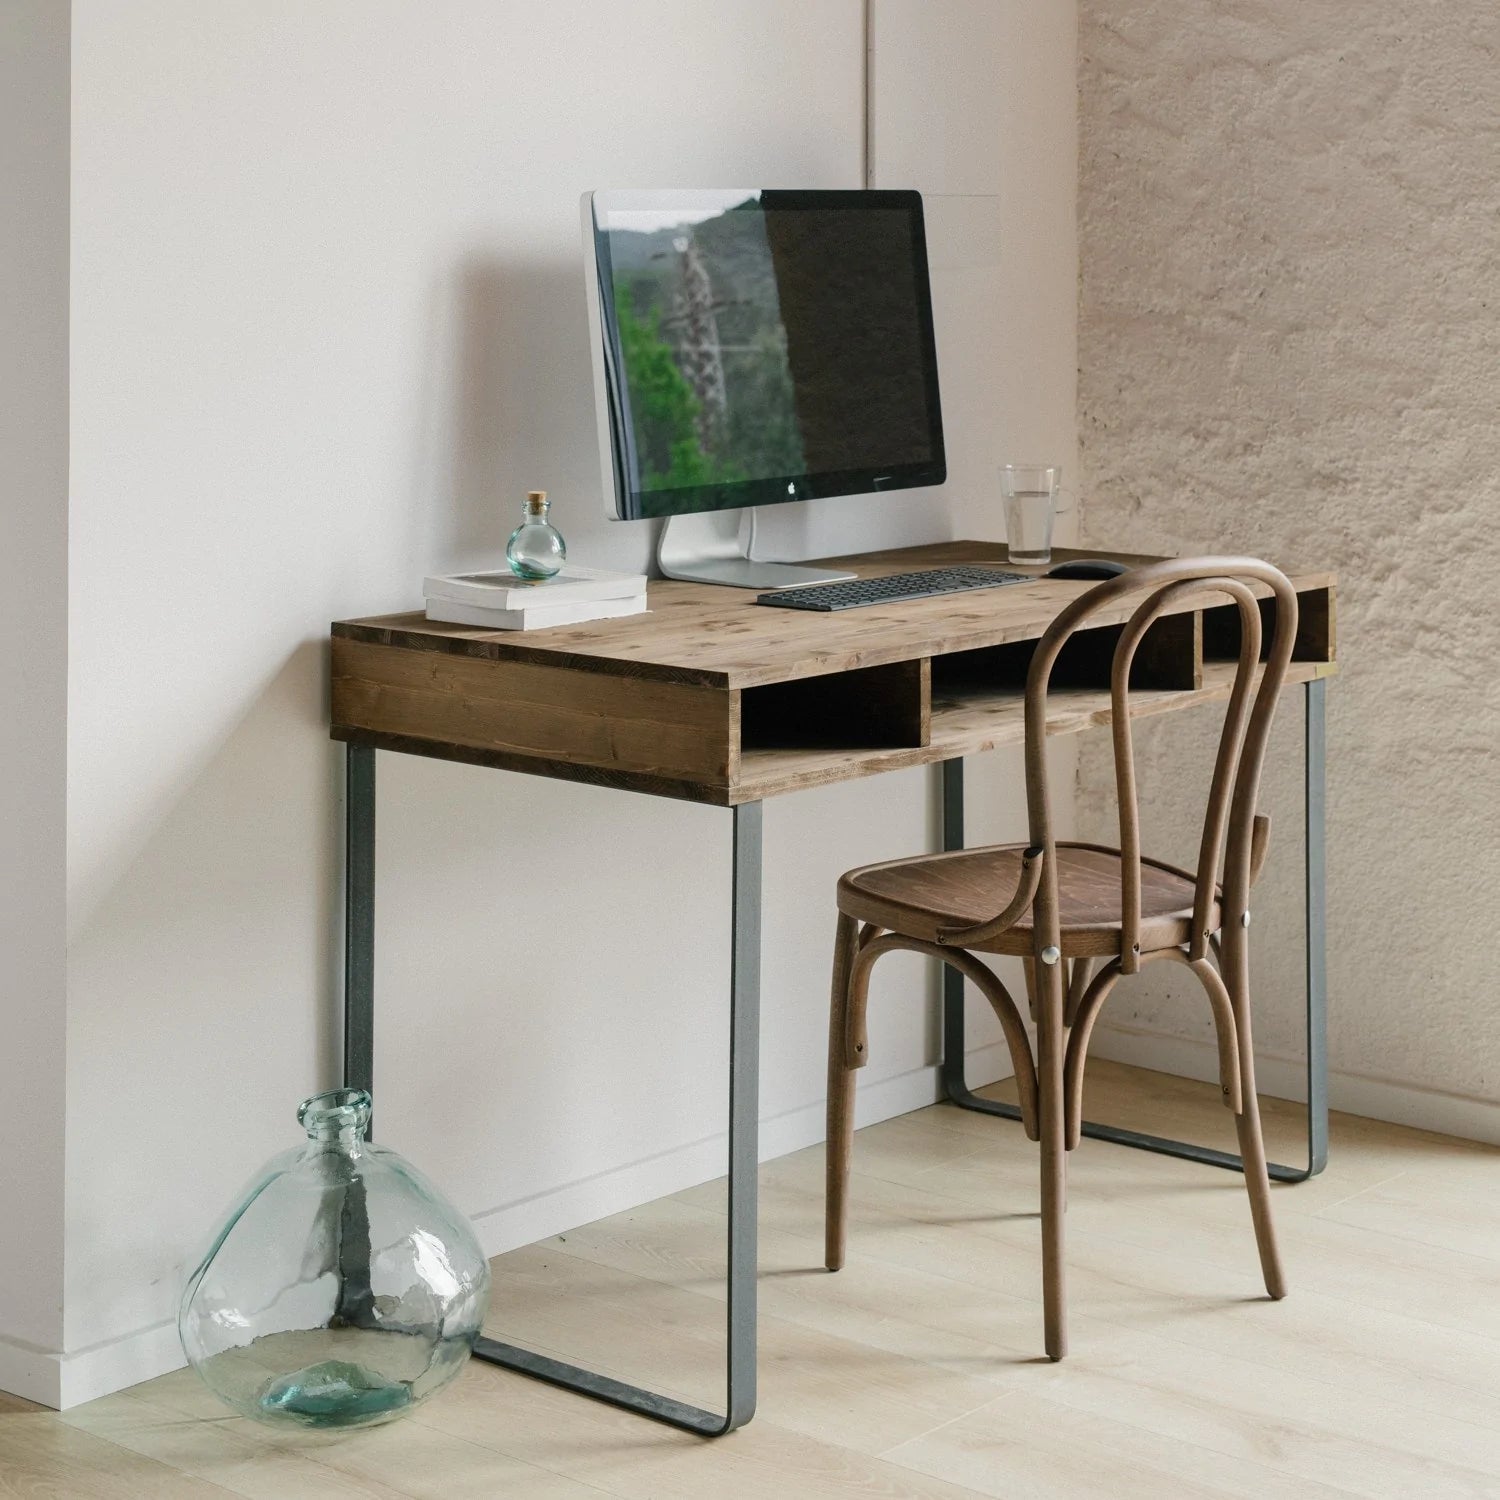 Los escritorio con almacenaje, como el Escritorio Elma, es un mueble práctico para cualquier oficina.